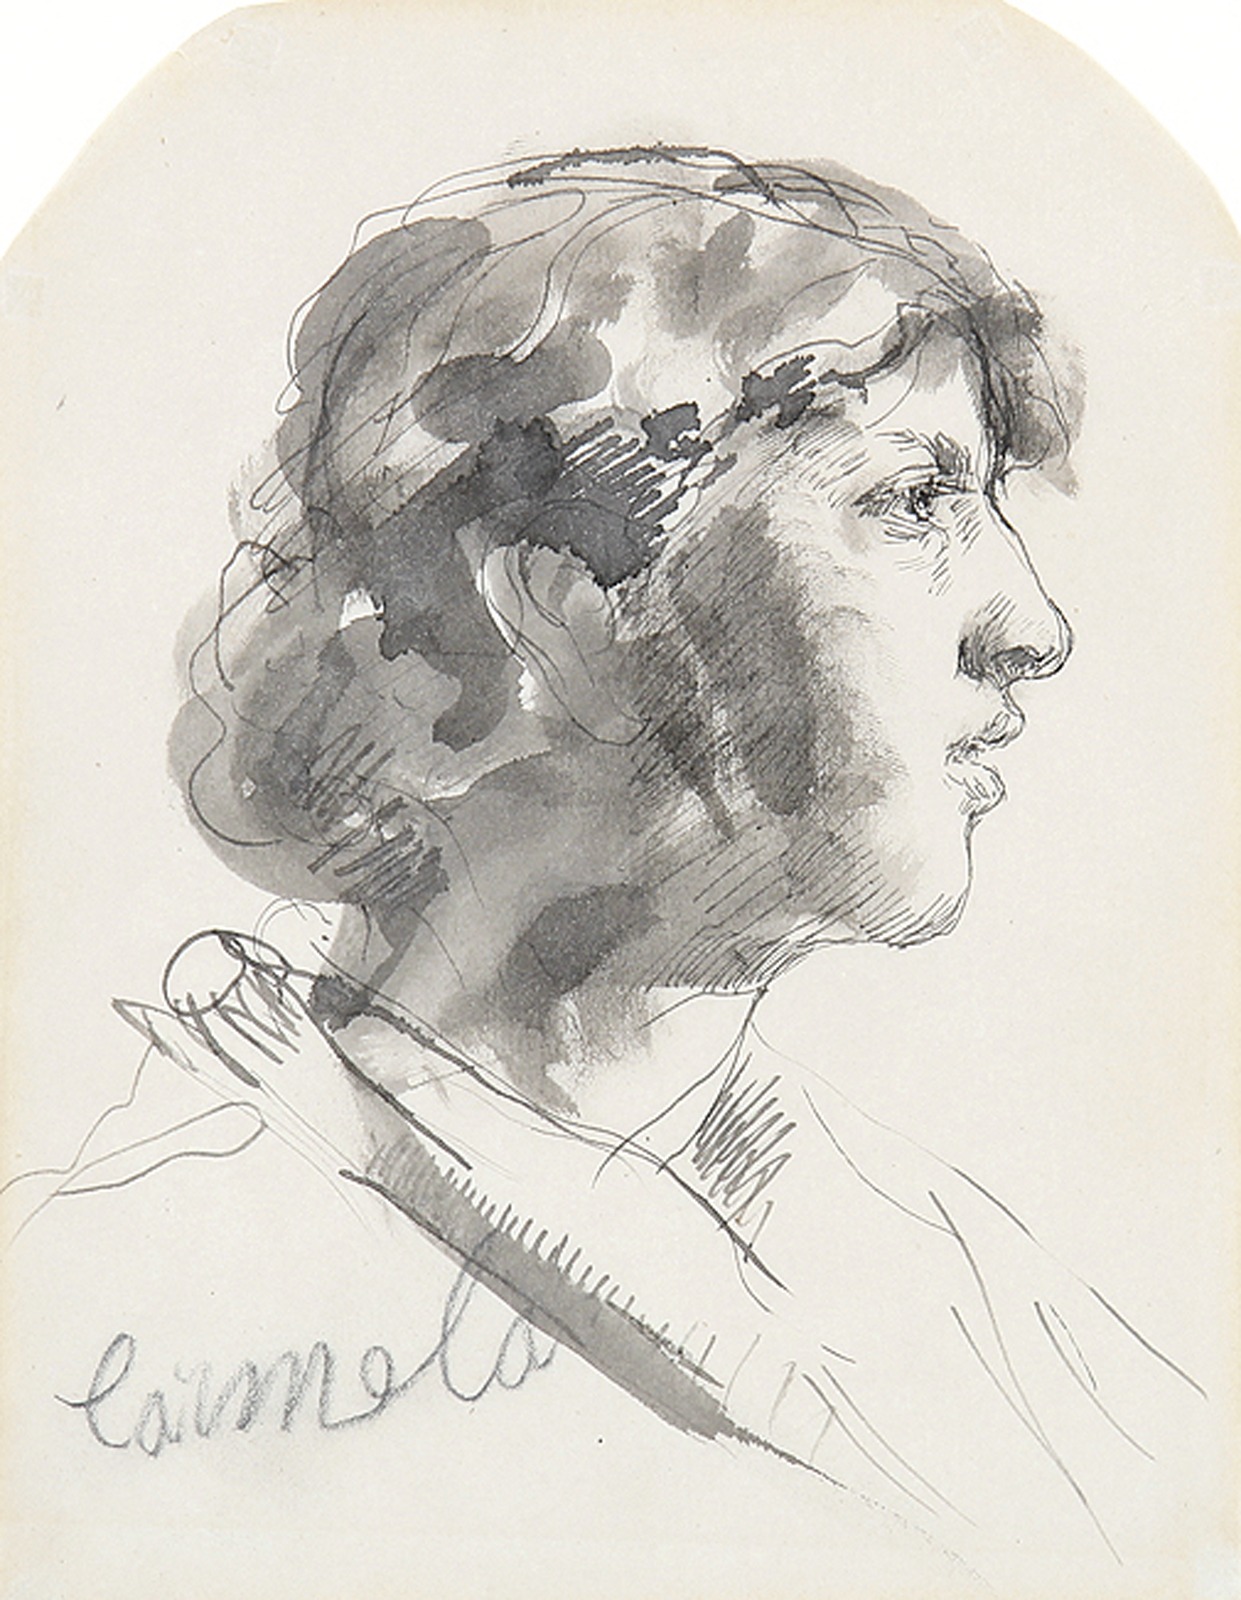 Kopf "Carmela" im Profil nach rechts - Giuseppina, die Tochter des Künstlers, sitzend.